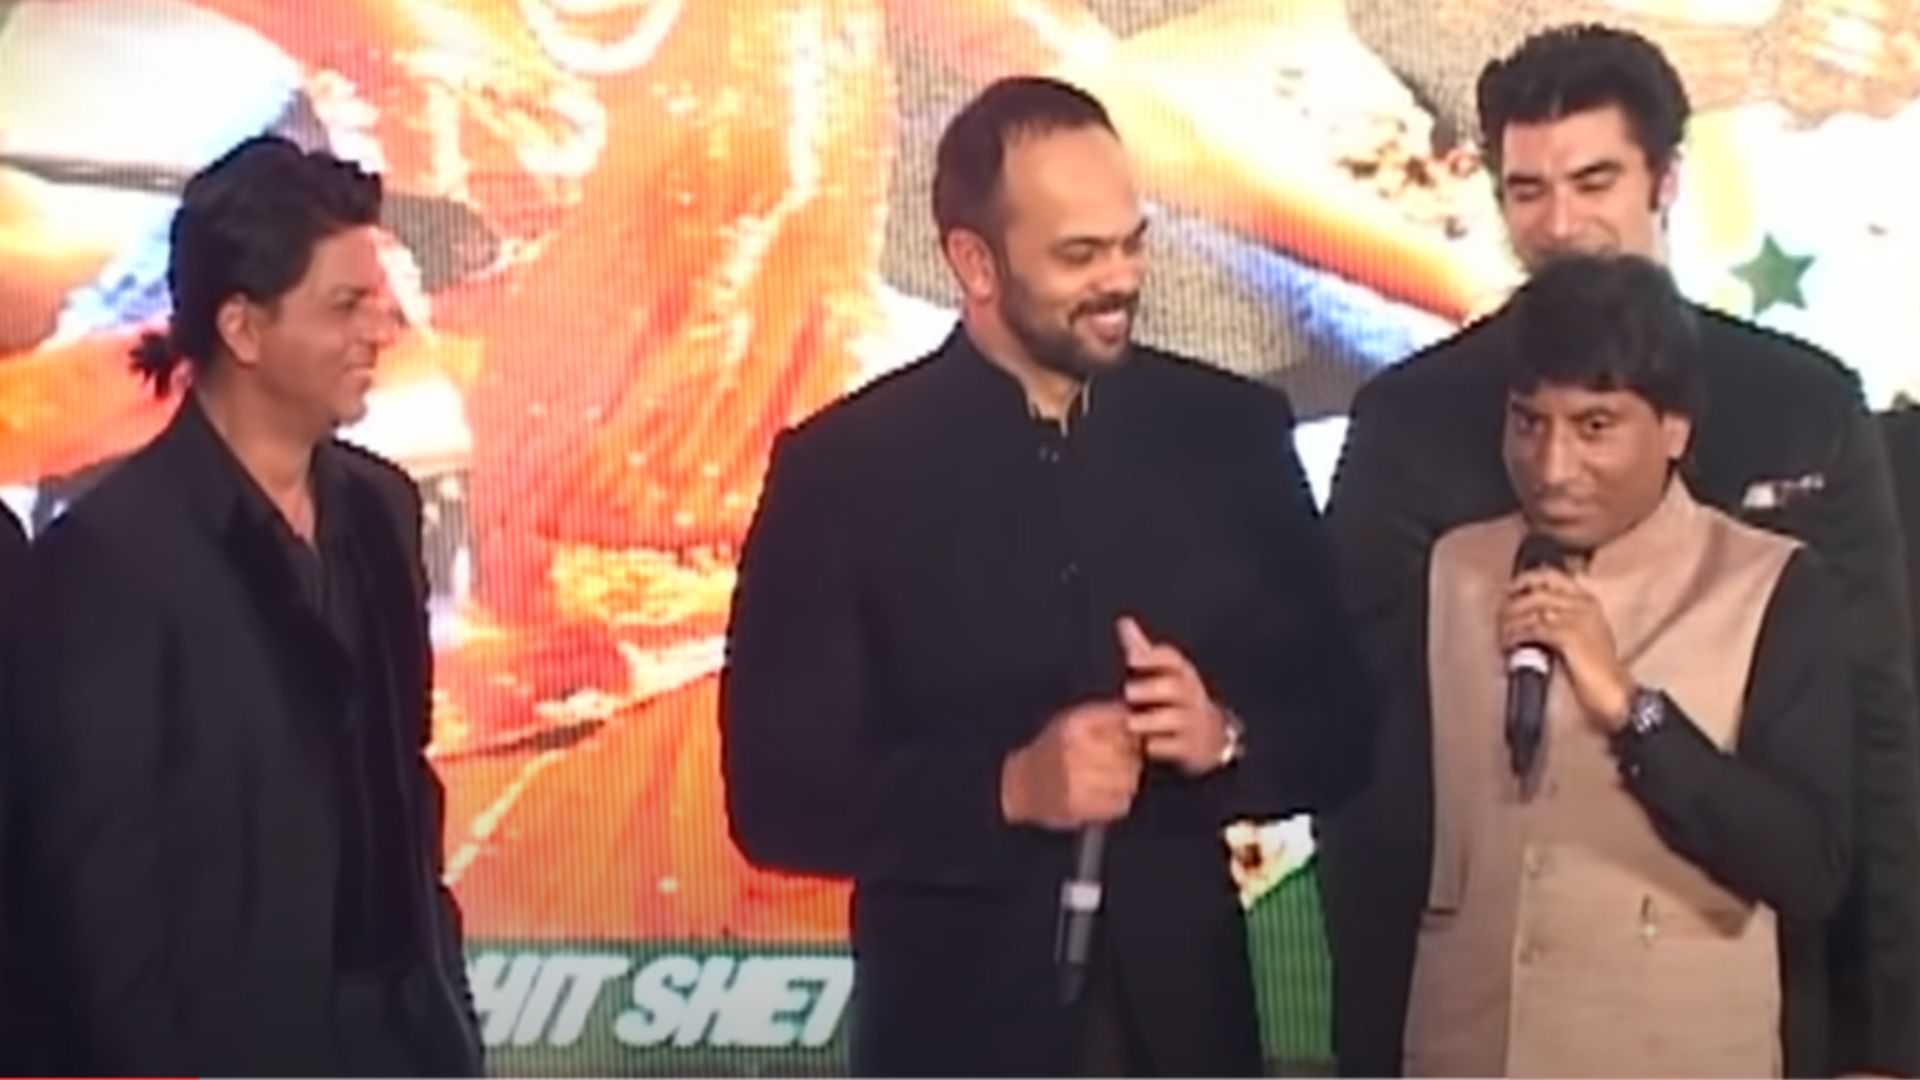 जब राजू श्रीवास्तव ने शाहरुख खान और रोहित शेट्टी को हंसा हंसा कर किया था लोटपोट, देखिए वीडियो